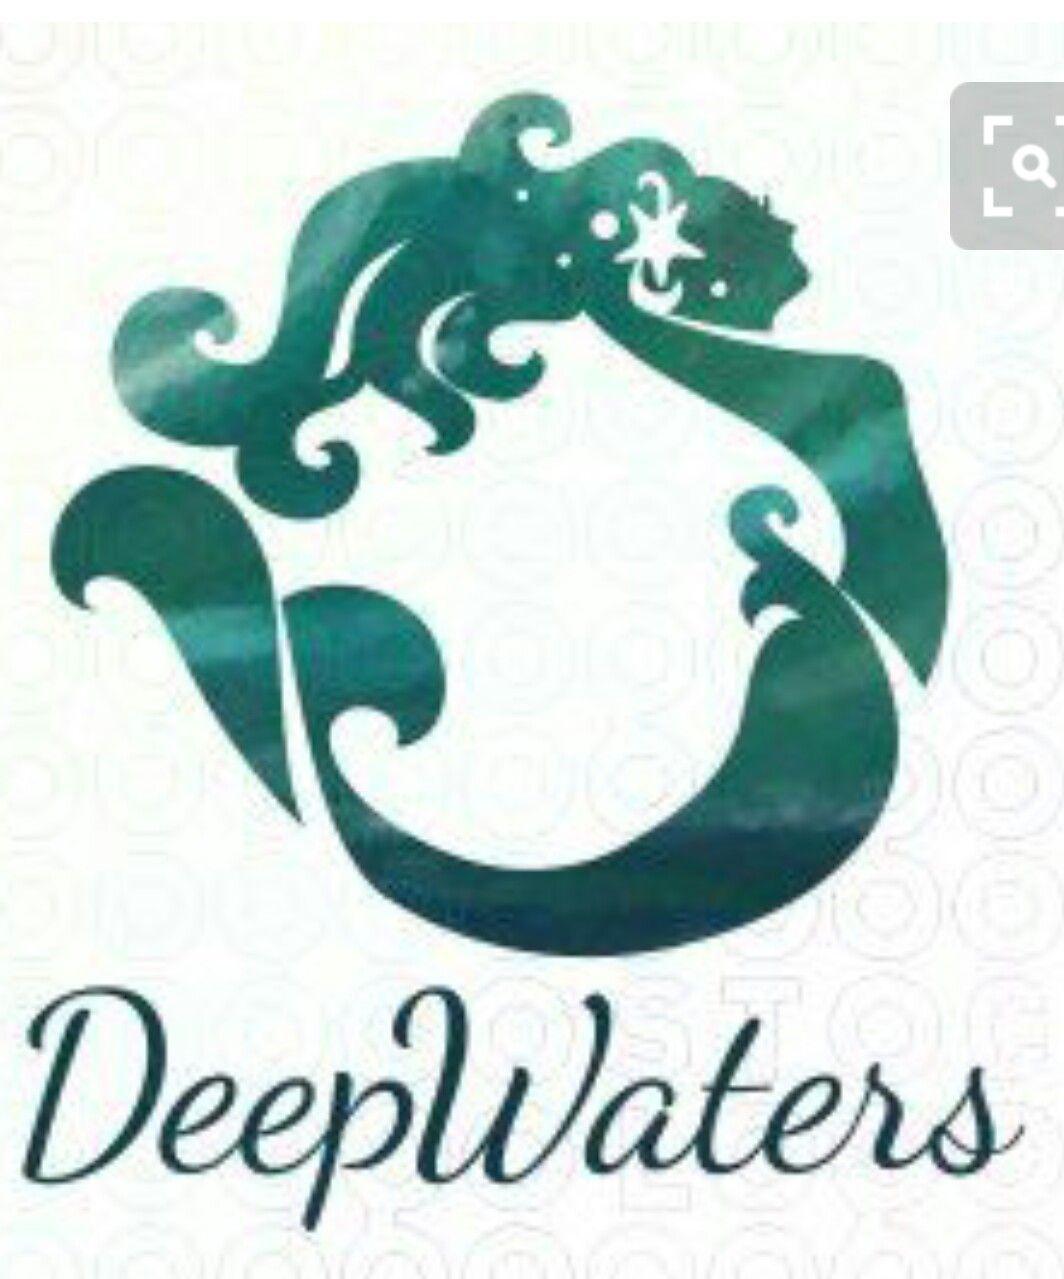 Mermen Logo - Awesome logo | Spas | Mermaid, Mermaid art, Mermaids, mermen